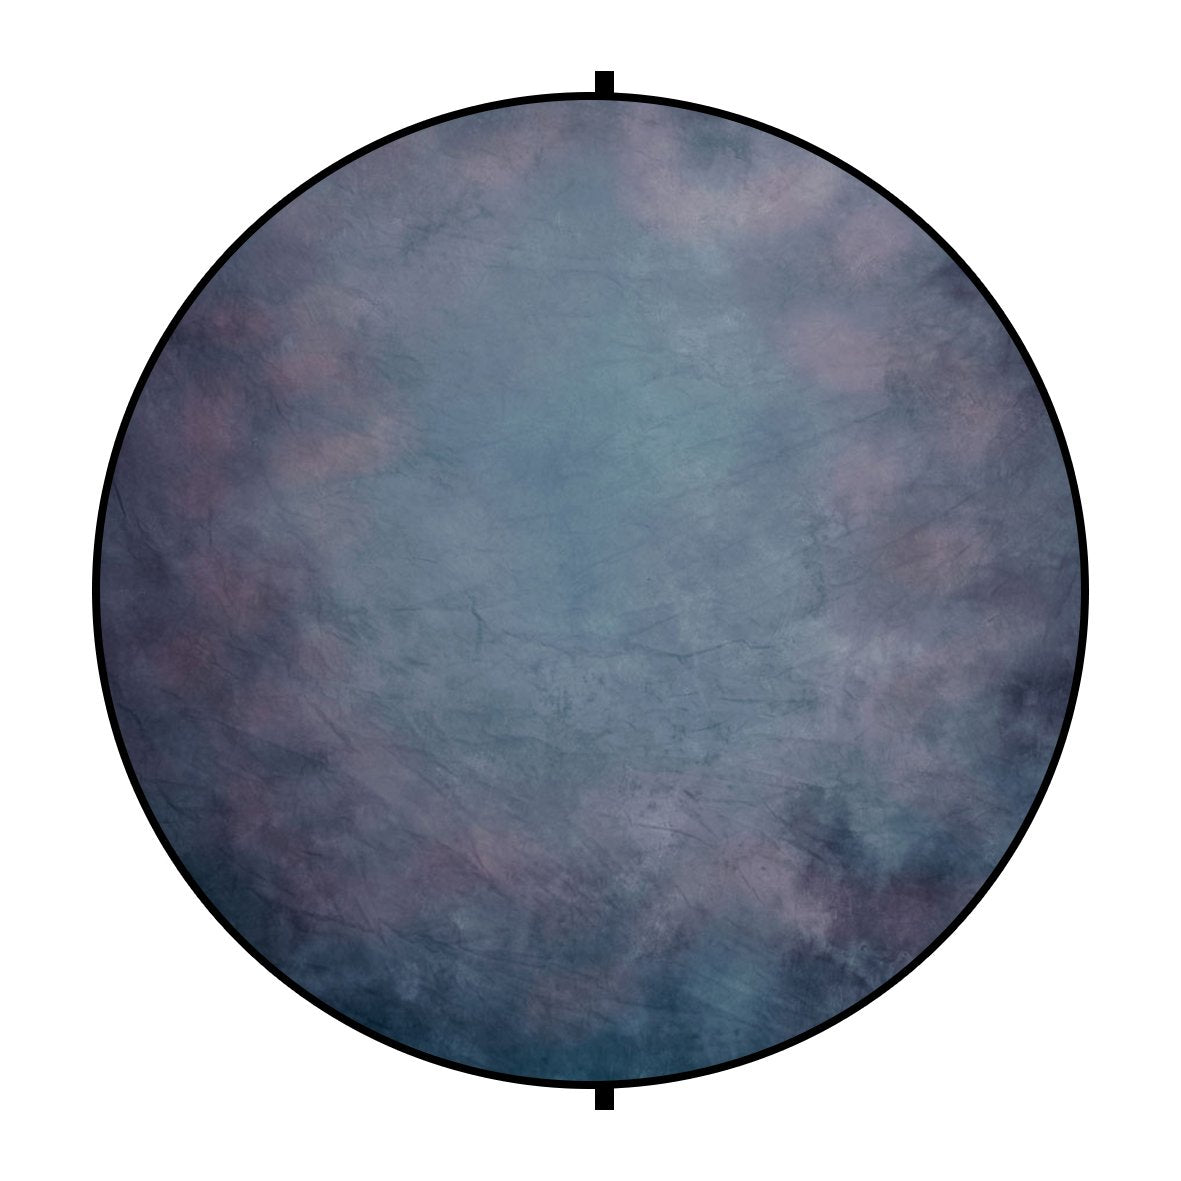 Kate Bien texture artistique /gris abstrait toile de fond pliable ronde mixte pour la photographie 5X5ft (1.5x1.5m)